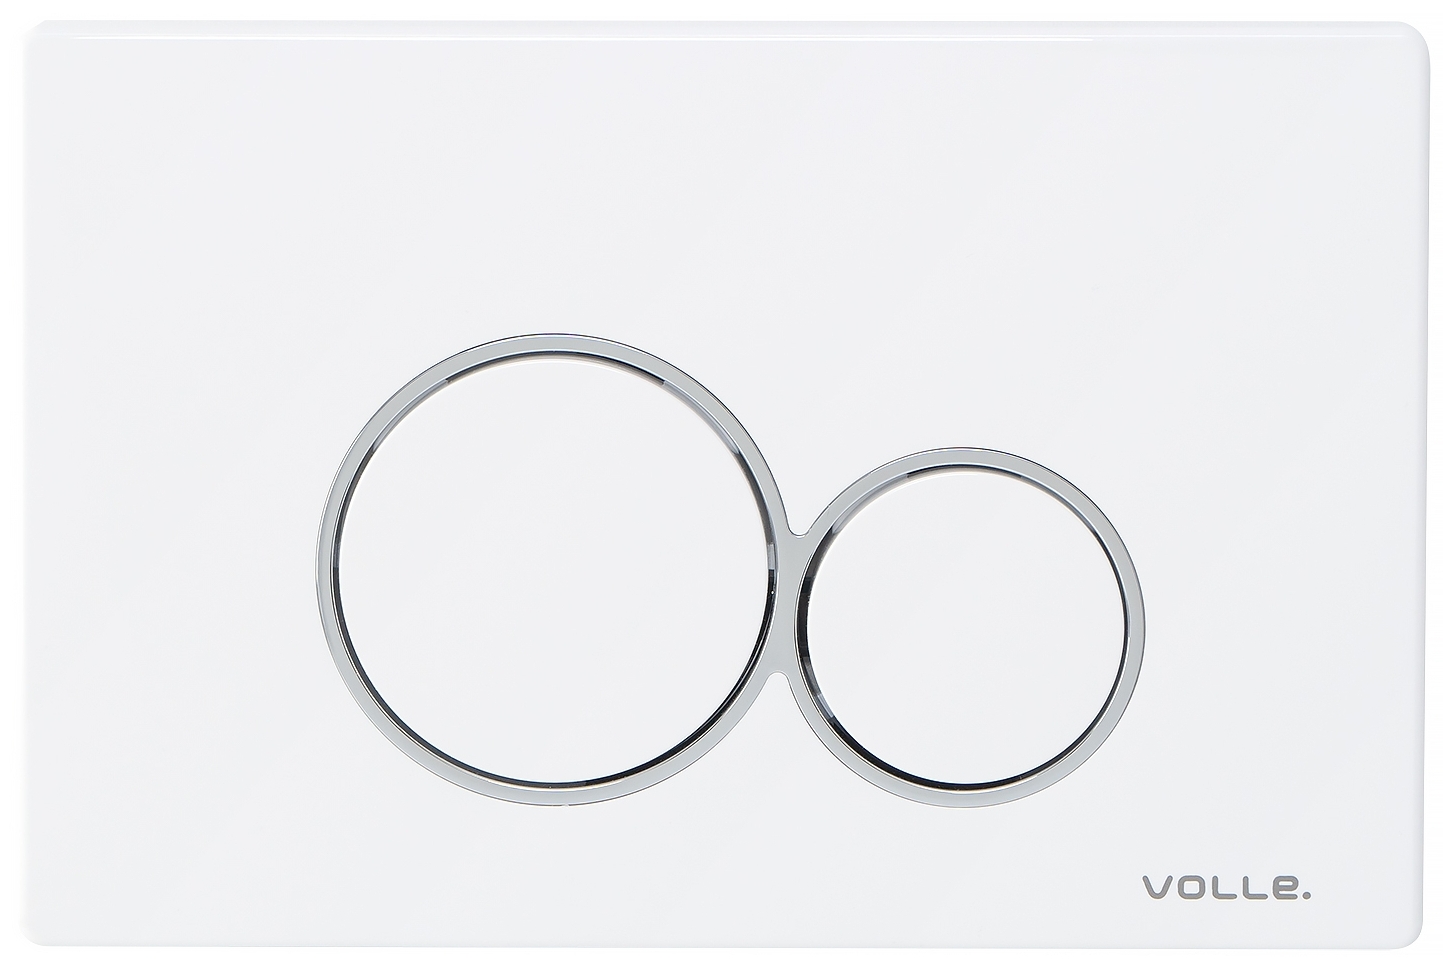 Панель смыва для инсталляции Volle Viso Evo 222124 в интернет-магазине, главное фото